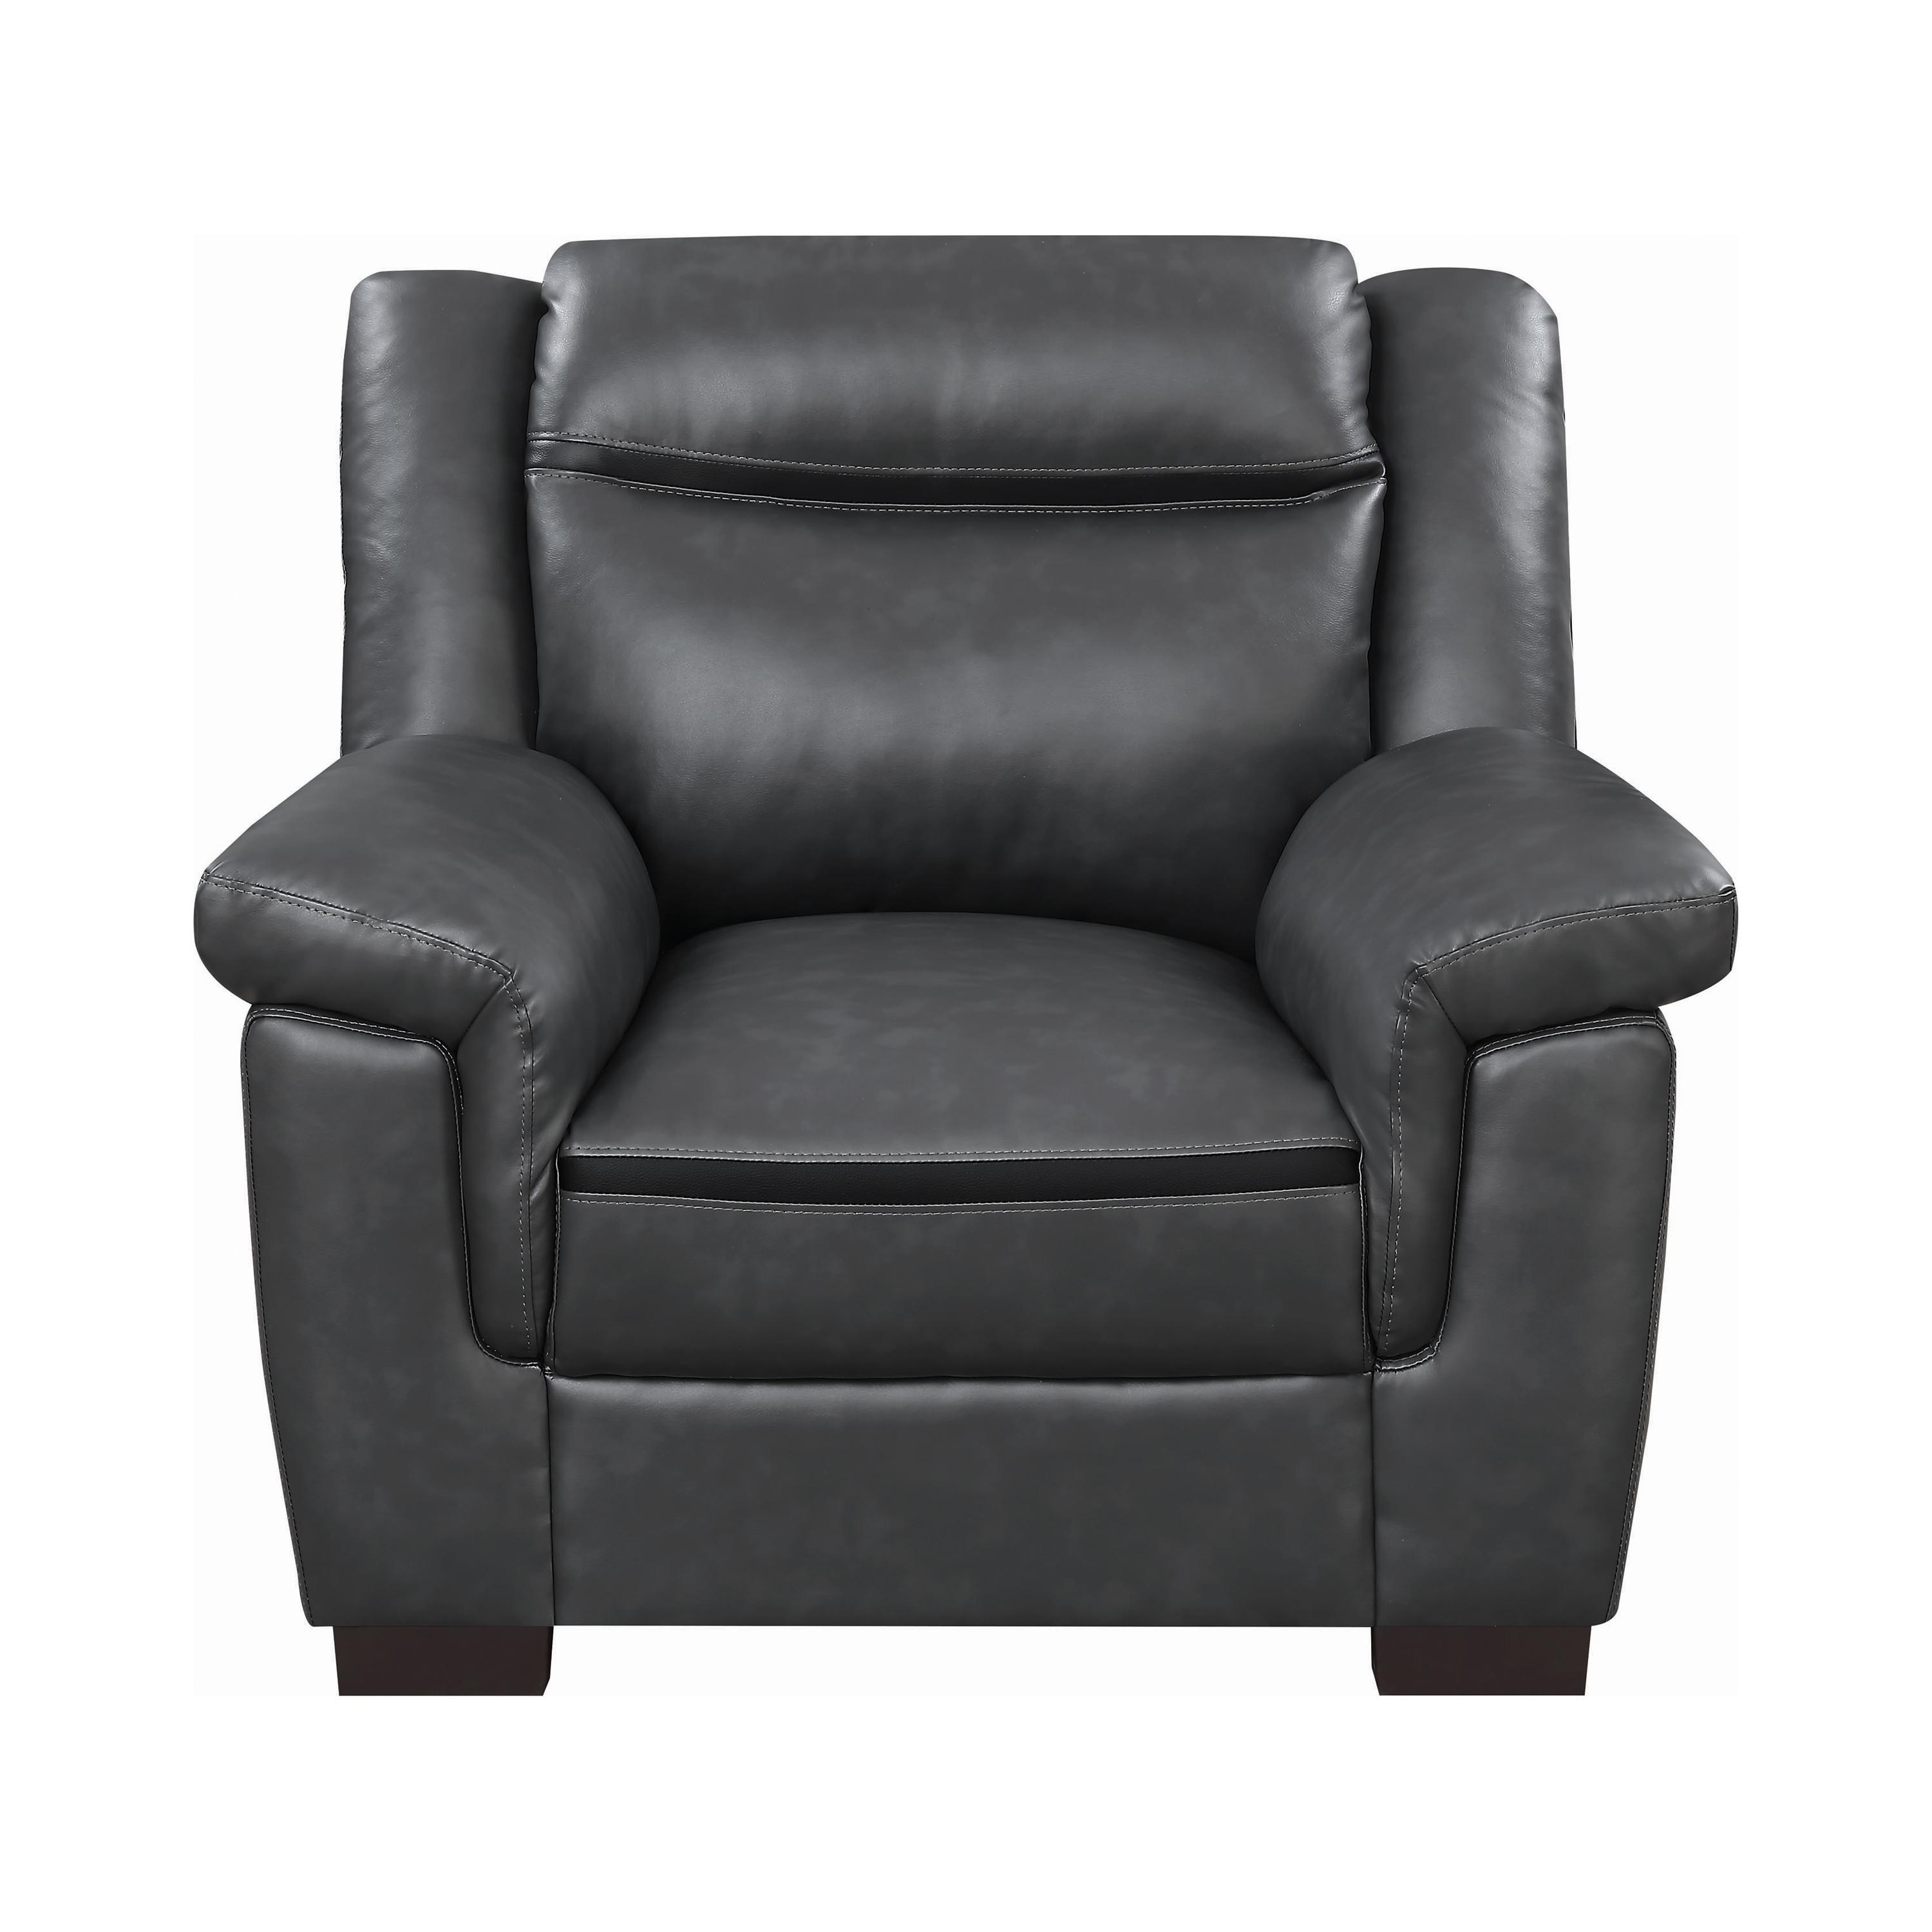 Coaster 506593 Arabella Arm Chair